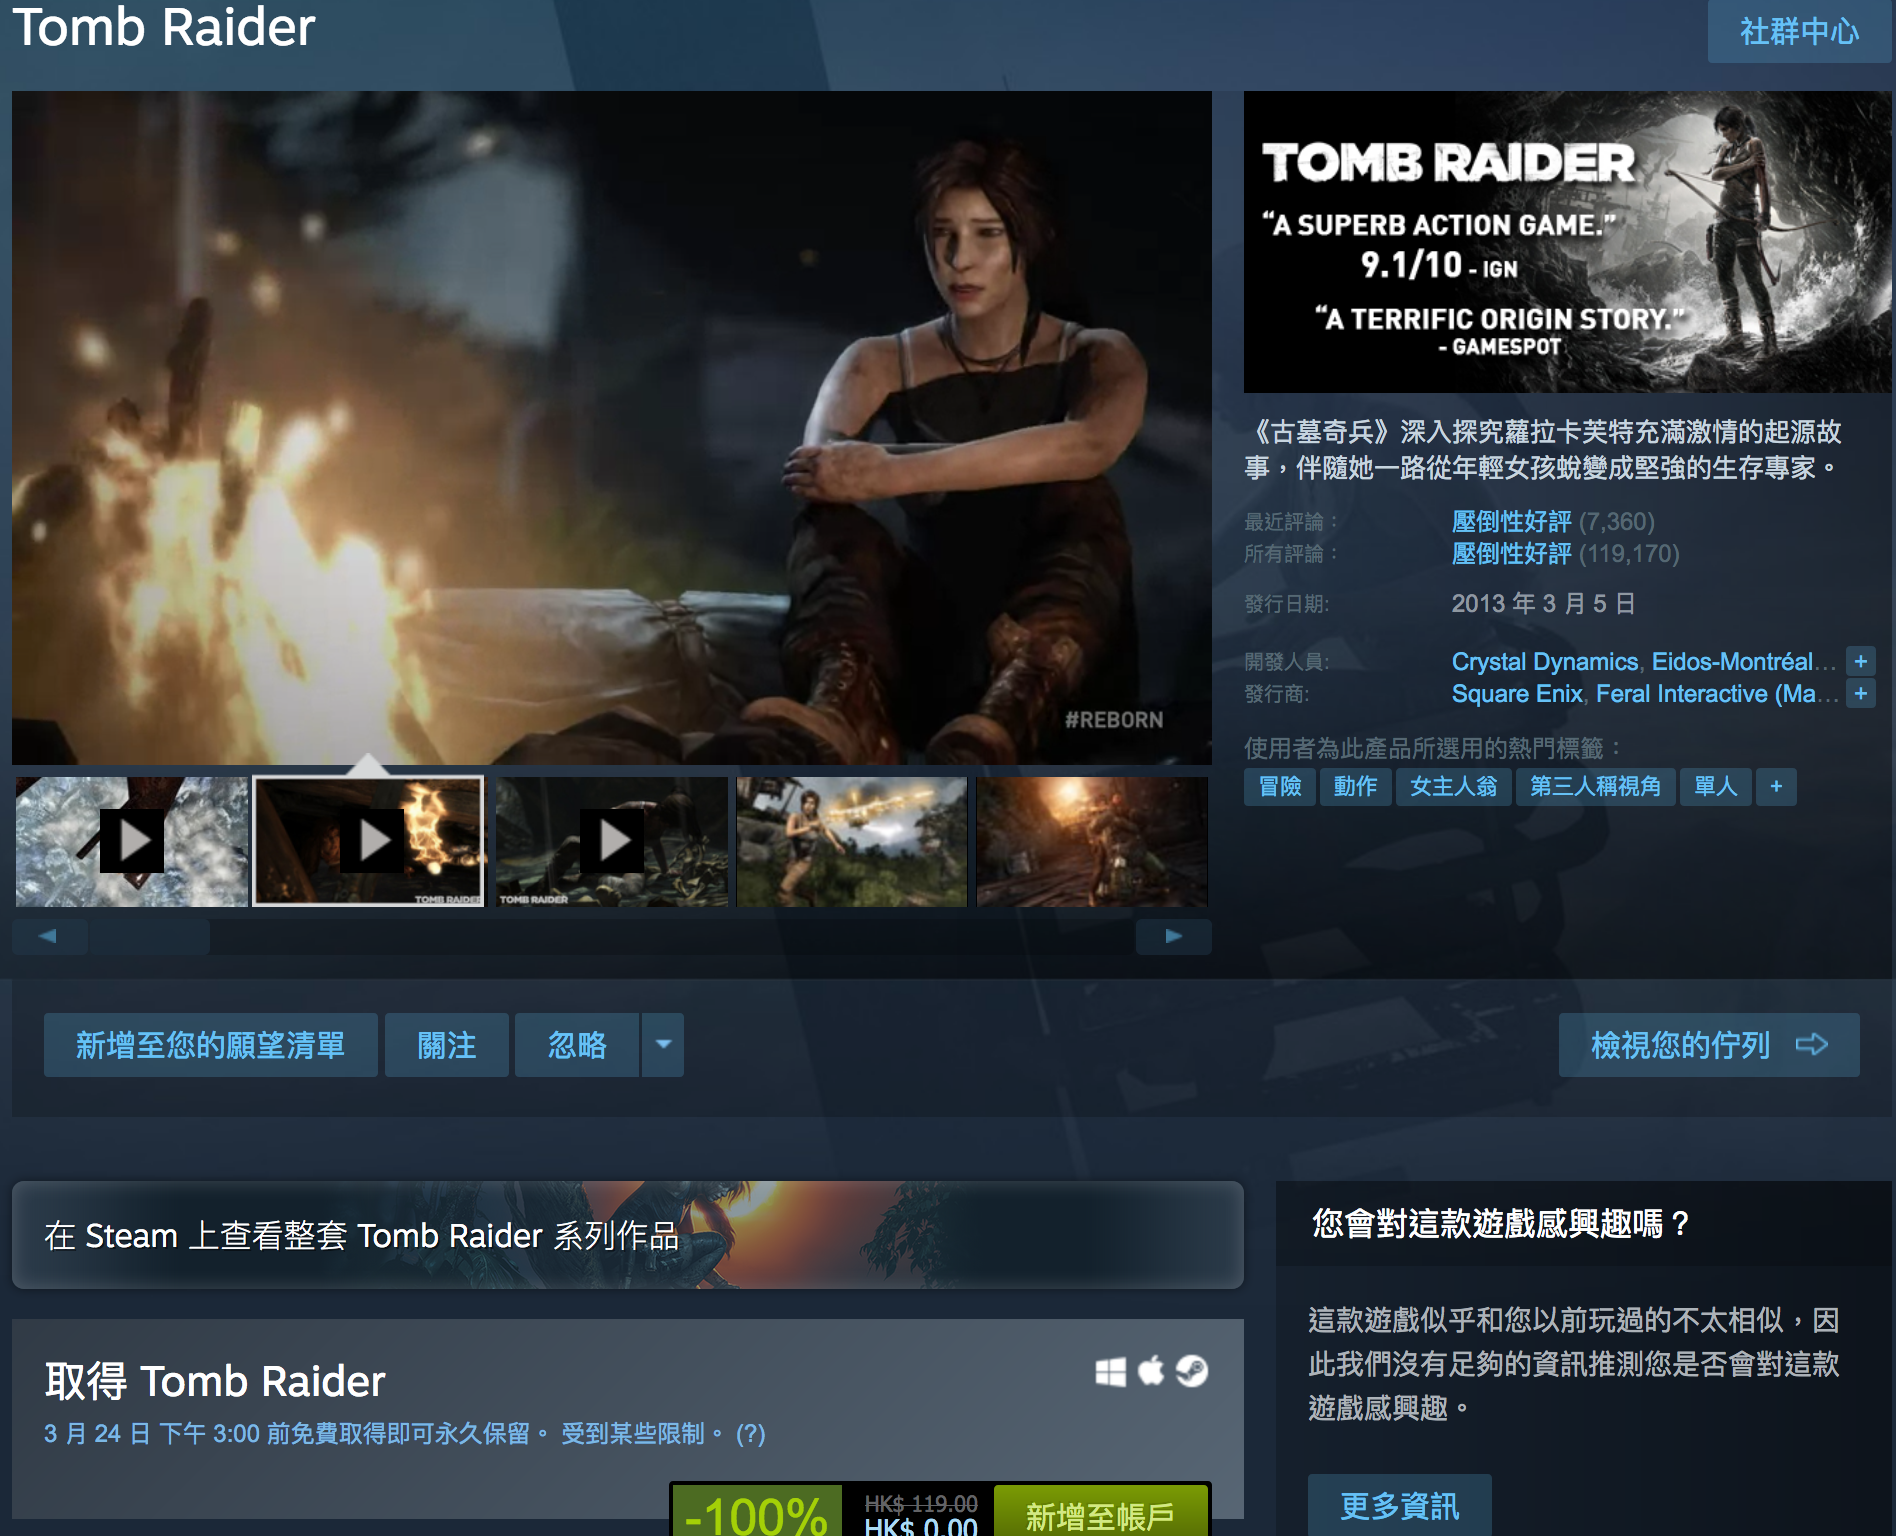 免費領取遊戲平台 Steam 多款遊戲，包括《古墓奇兵9（Tomb Raider）》、《古墓奇兵：歐西里斯神殿 LARA CROFT AND THE TEMPLE OF OSIRIS™》、《Deiland》、《Headsnatchers》、《Drawful 2》和《GOAT OF DUTY》。